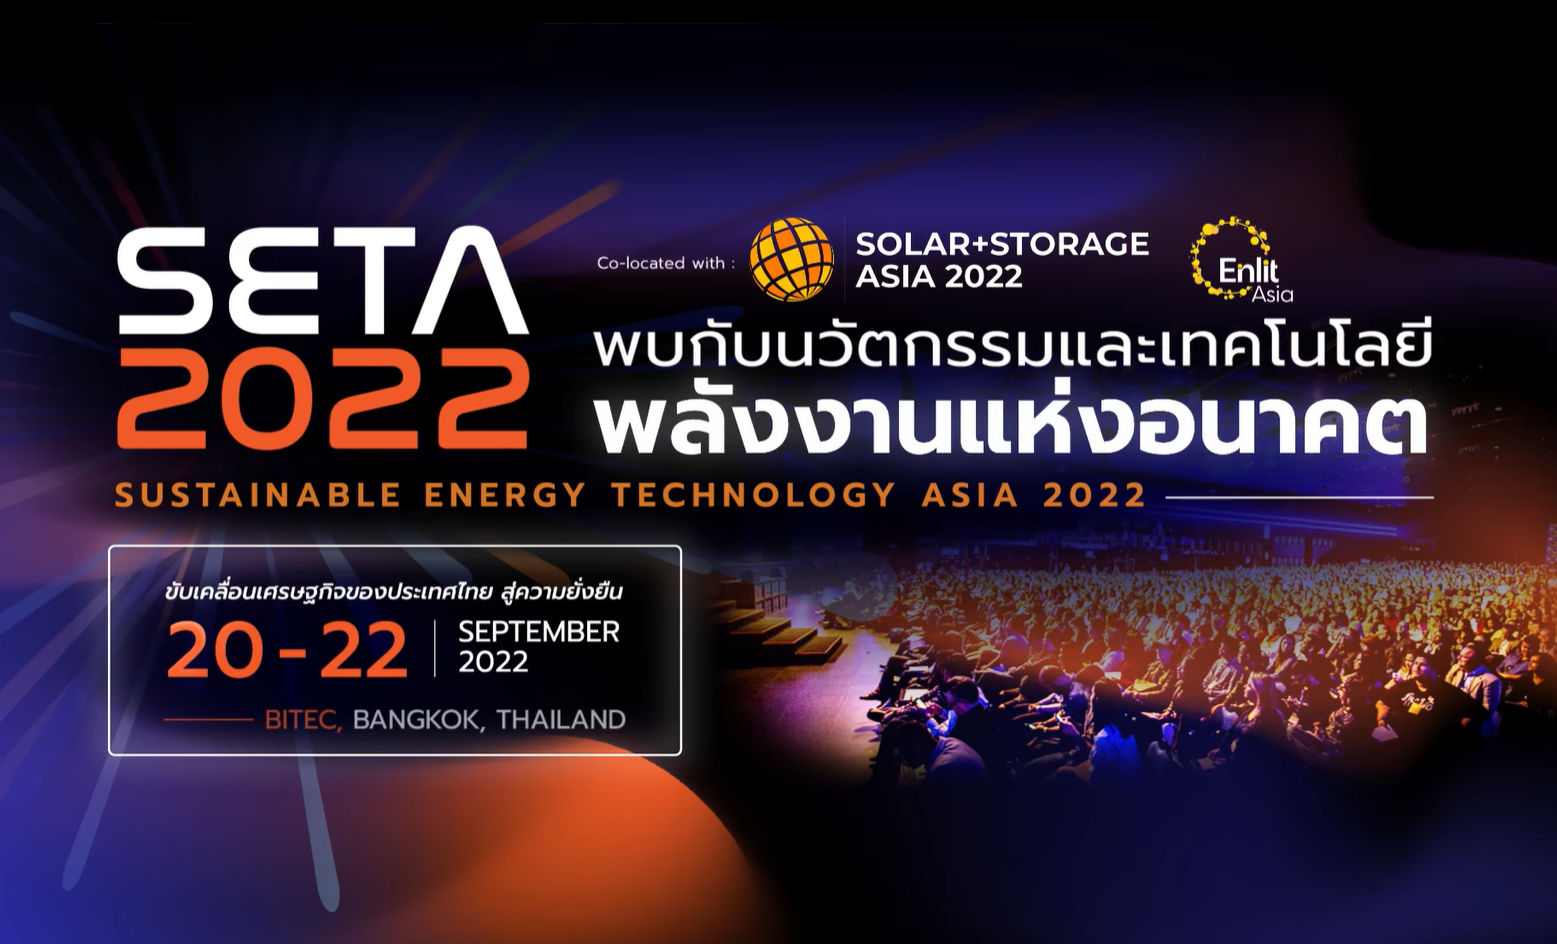 เปิดเวทีถกวิจัยเพื่อนวัตกรรมสู่ความยั่งยืน พร้อมเกาะติดความก้าวหน้าเทคโนโลยี Solar & Storage ที่งาน SETA 2022 ระหว่าง 2022 ก.ย. นี้Solar & Storage ที่งาน SETA 2022 ตลาดอุตสาหกรรมไทย นวัตกรรมอุตสาหกรรมไทย พัฒนาอุตสาหกรรมไทยให้ก้าวหน้า capture from video